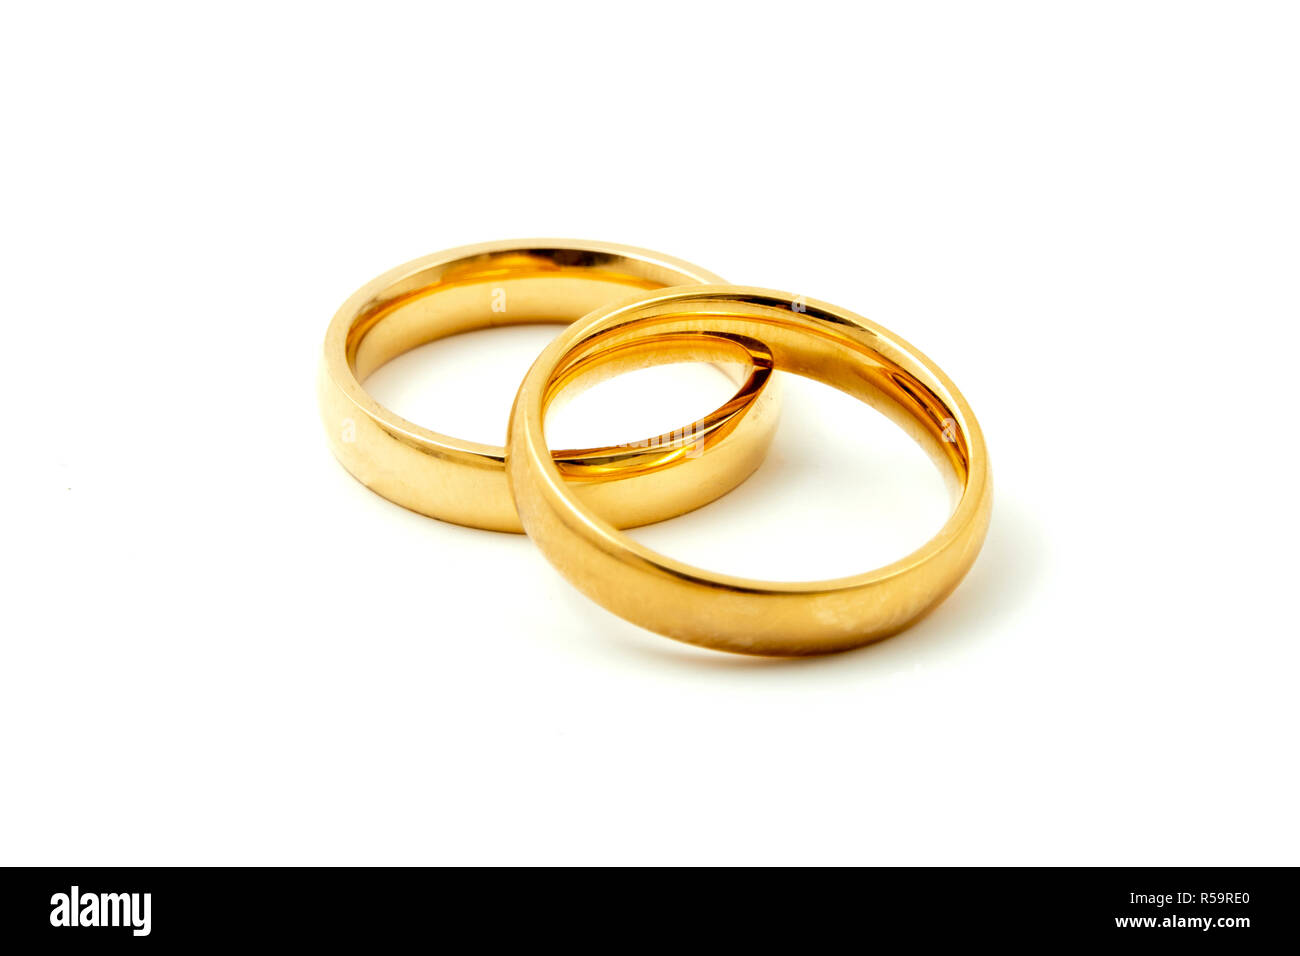 Ilustración de dos anillos de bodas de oro con conceptos de unidad de fondo  en blanco